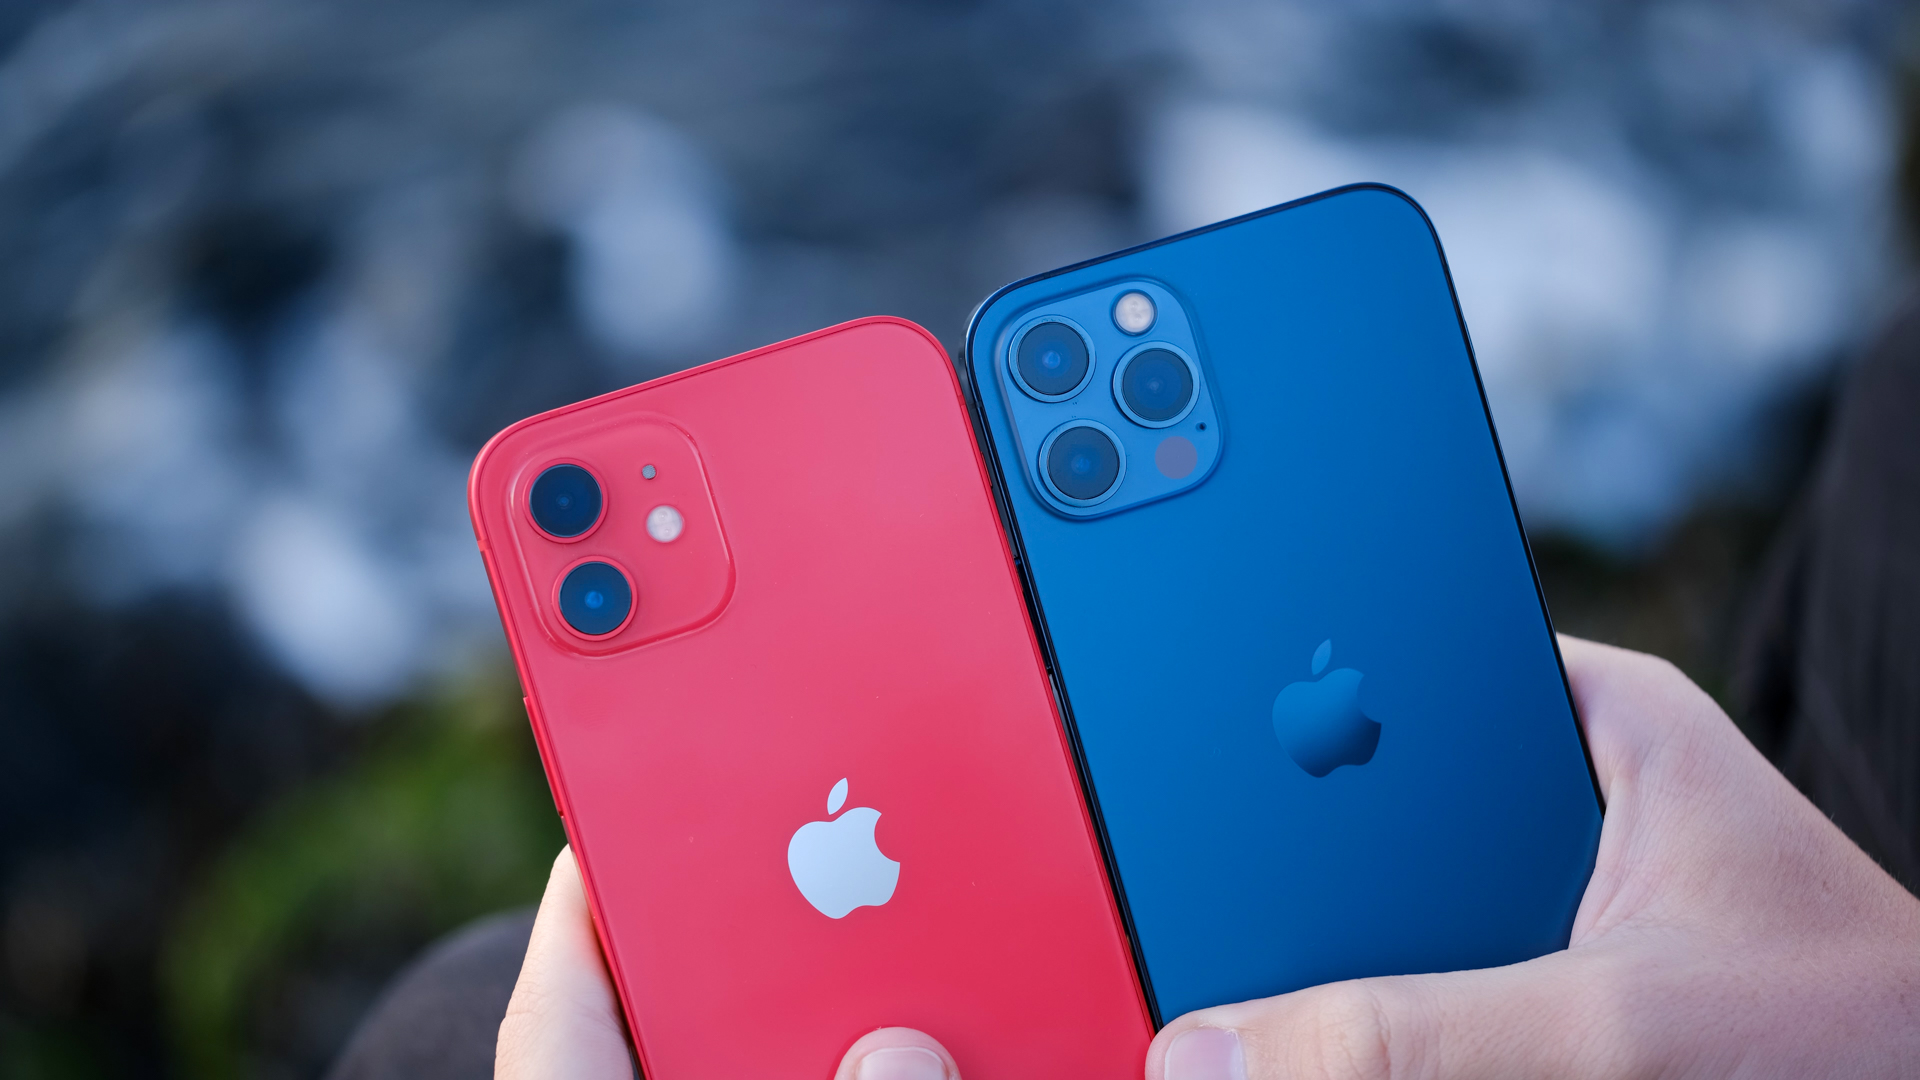 Giá iPhone 12 tại Việt Nam giảm sập sàn, rẻ ngang iPhone 11 - Ảnh 1.